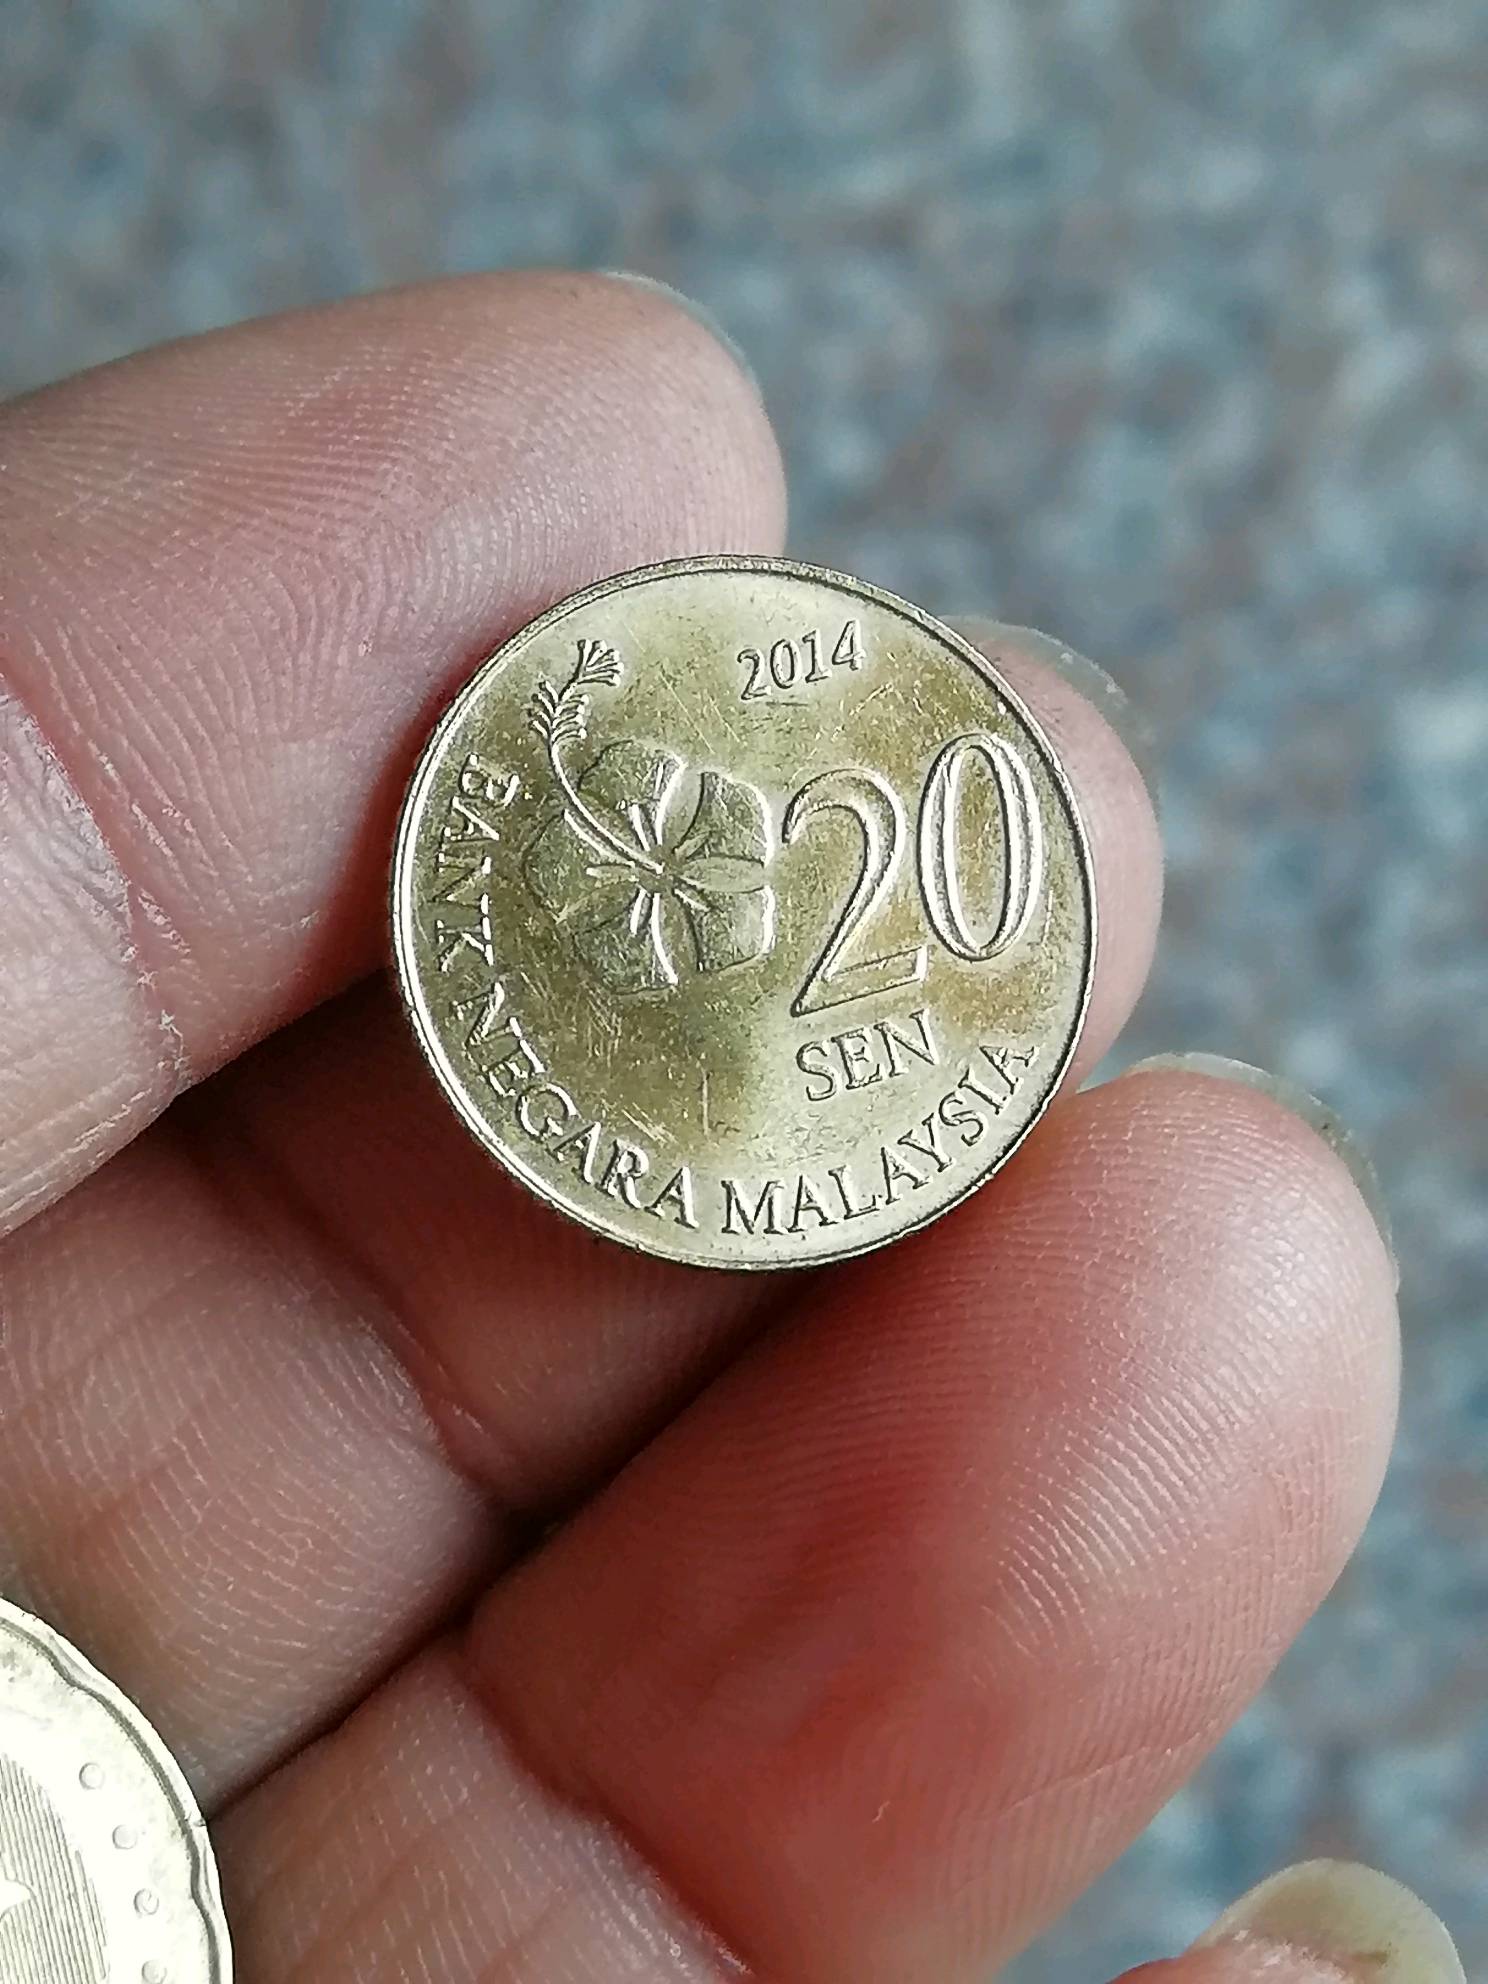 马来西亚币图片20元图片